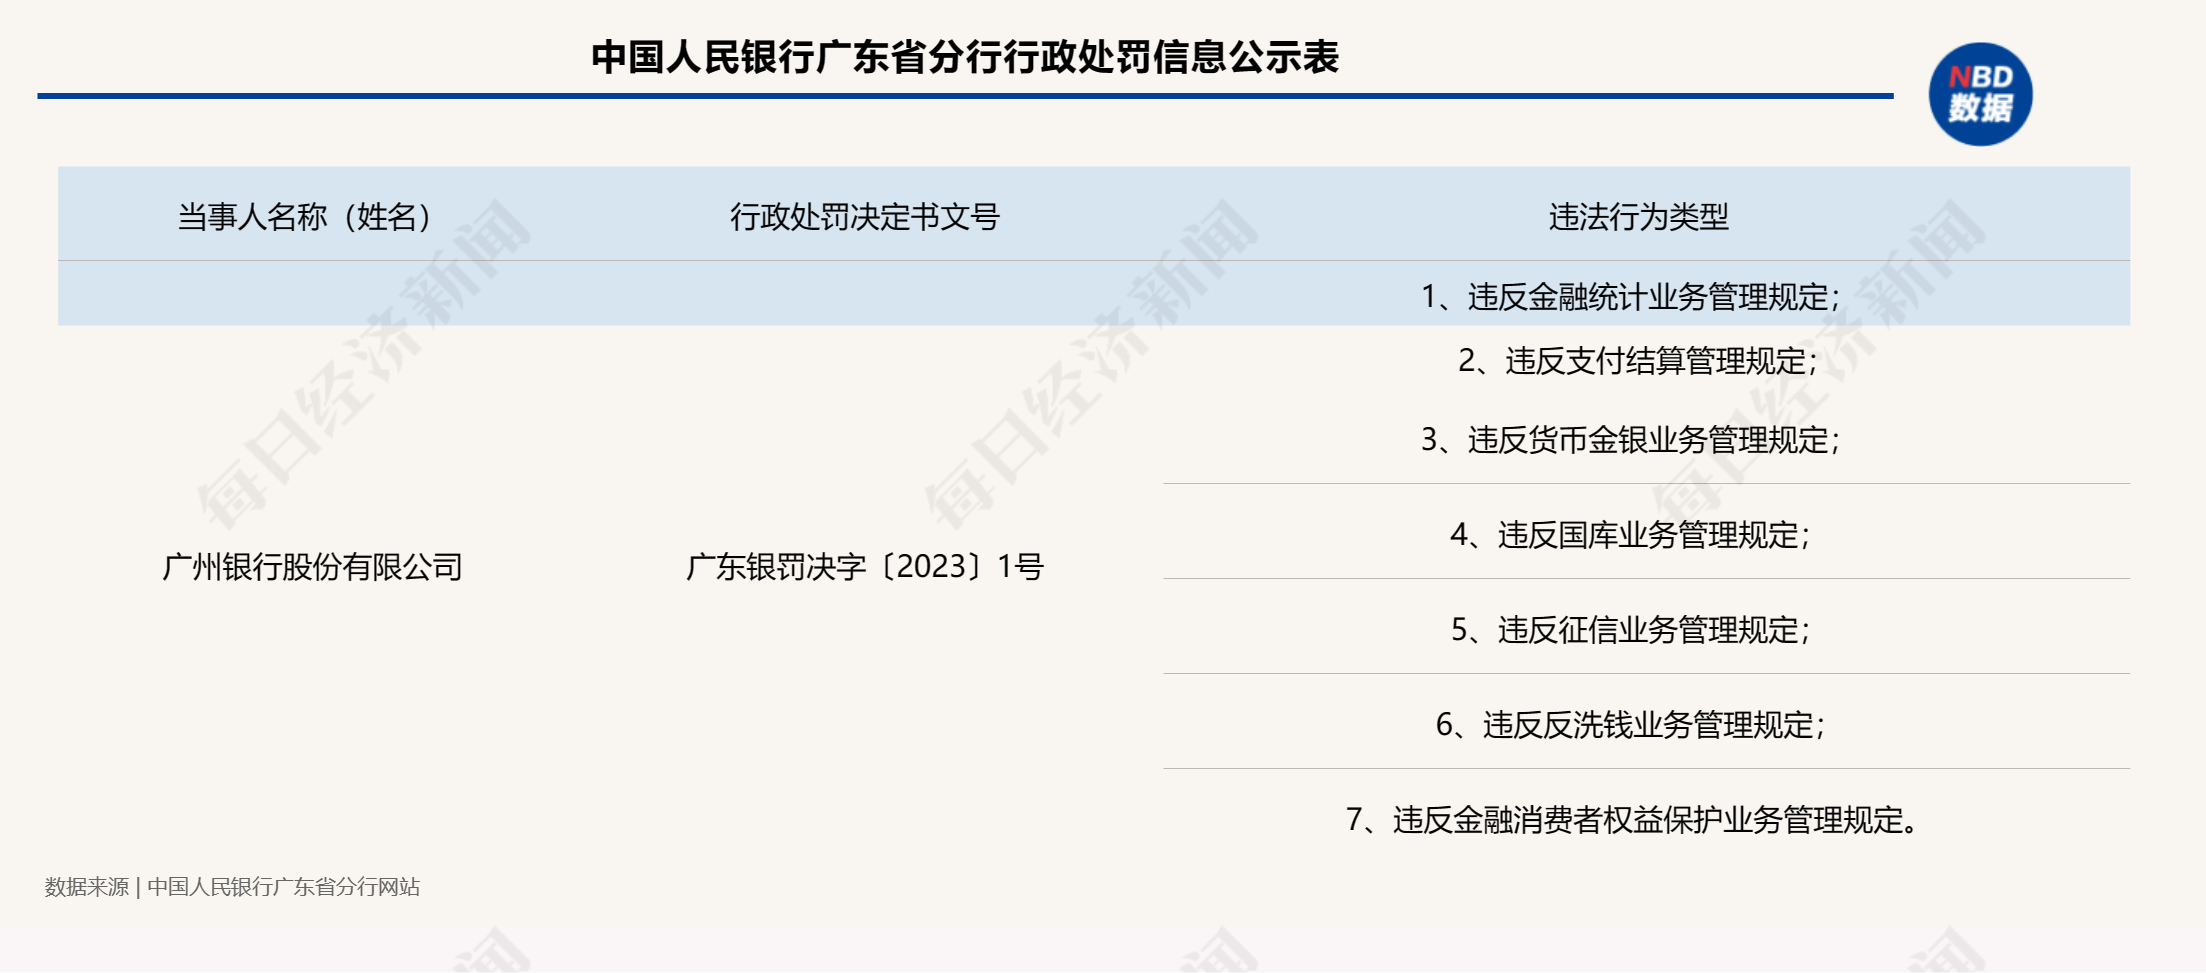 因违反金融统计业务管理规定等7项违法行为，广州银行被罚896.9万元